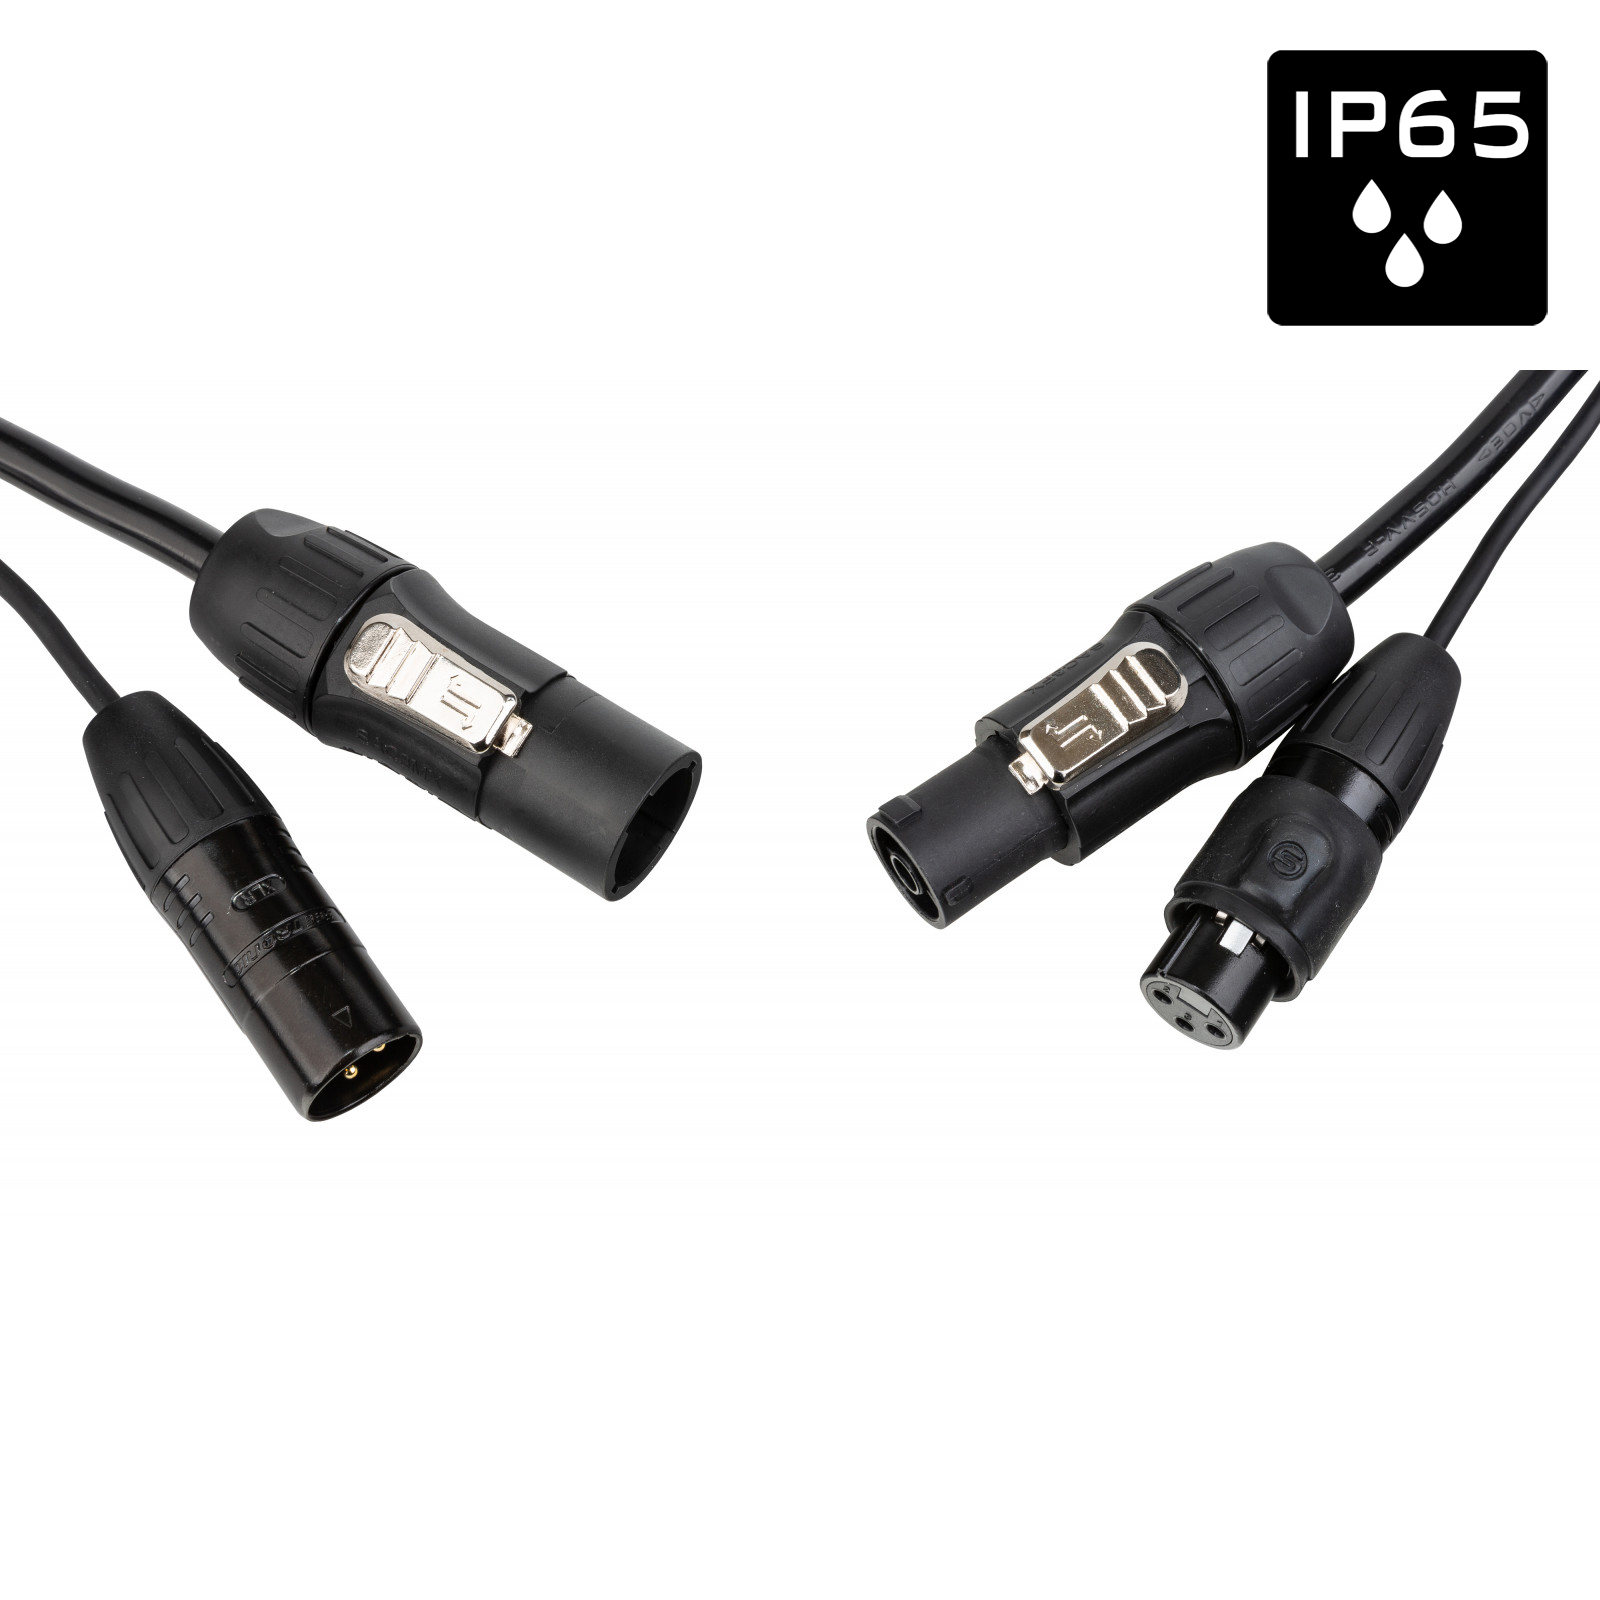 Câble IP65 avec connecteurs Seetronic XLR 3p et compatibles True1 - Longueur 3m